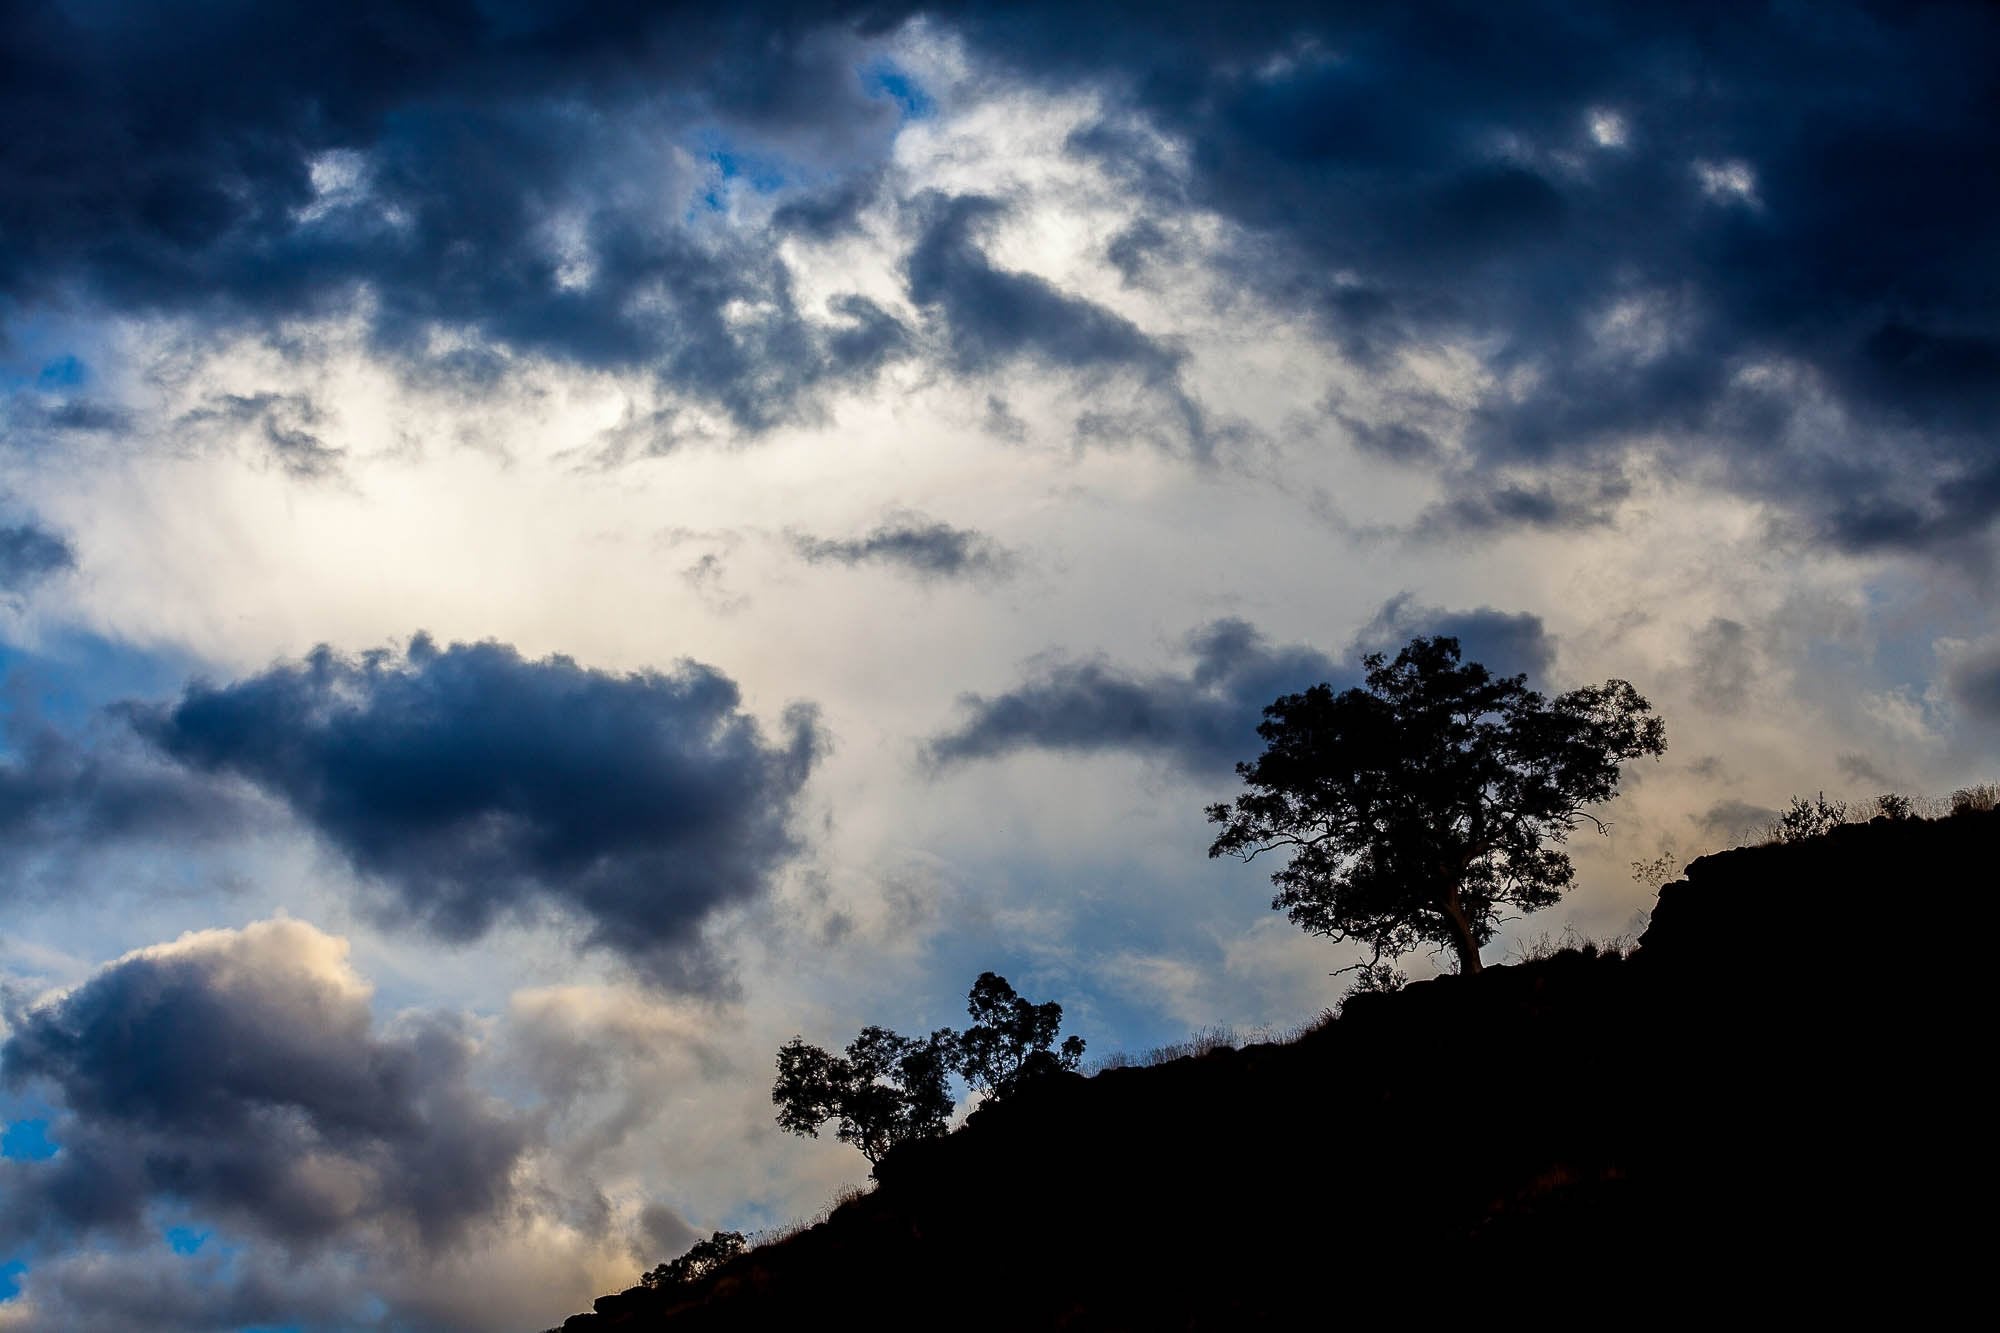 Late Afternoon Storm Clouds, Karijini, The Pilbara